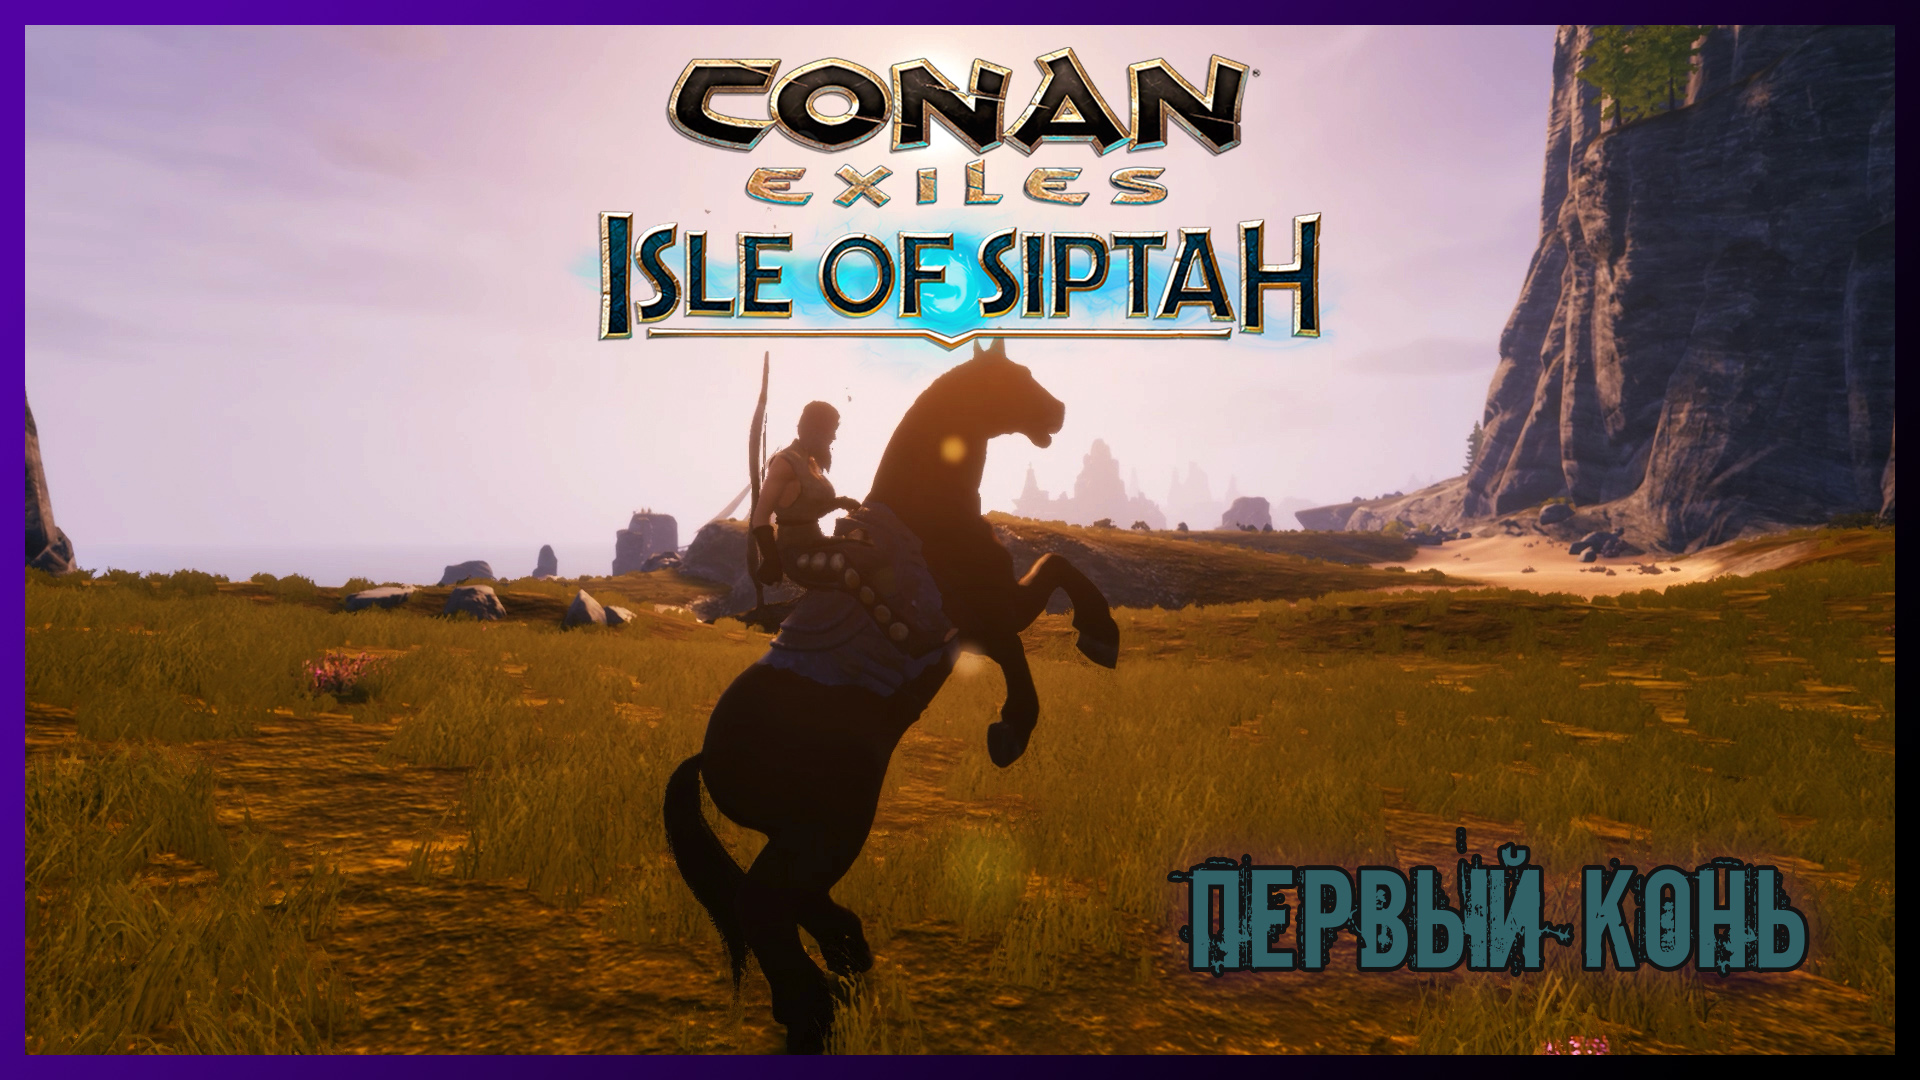 Конан кони. Игры. Конан лошади. Conan Exiles Isle of Siptah.